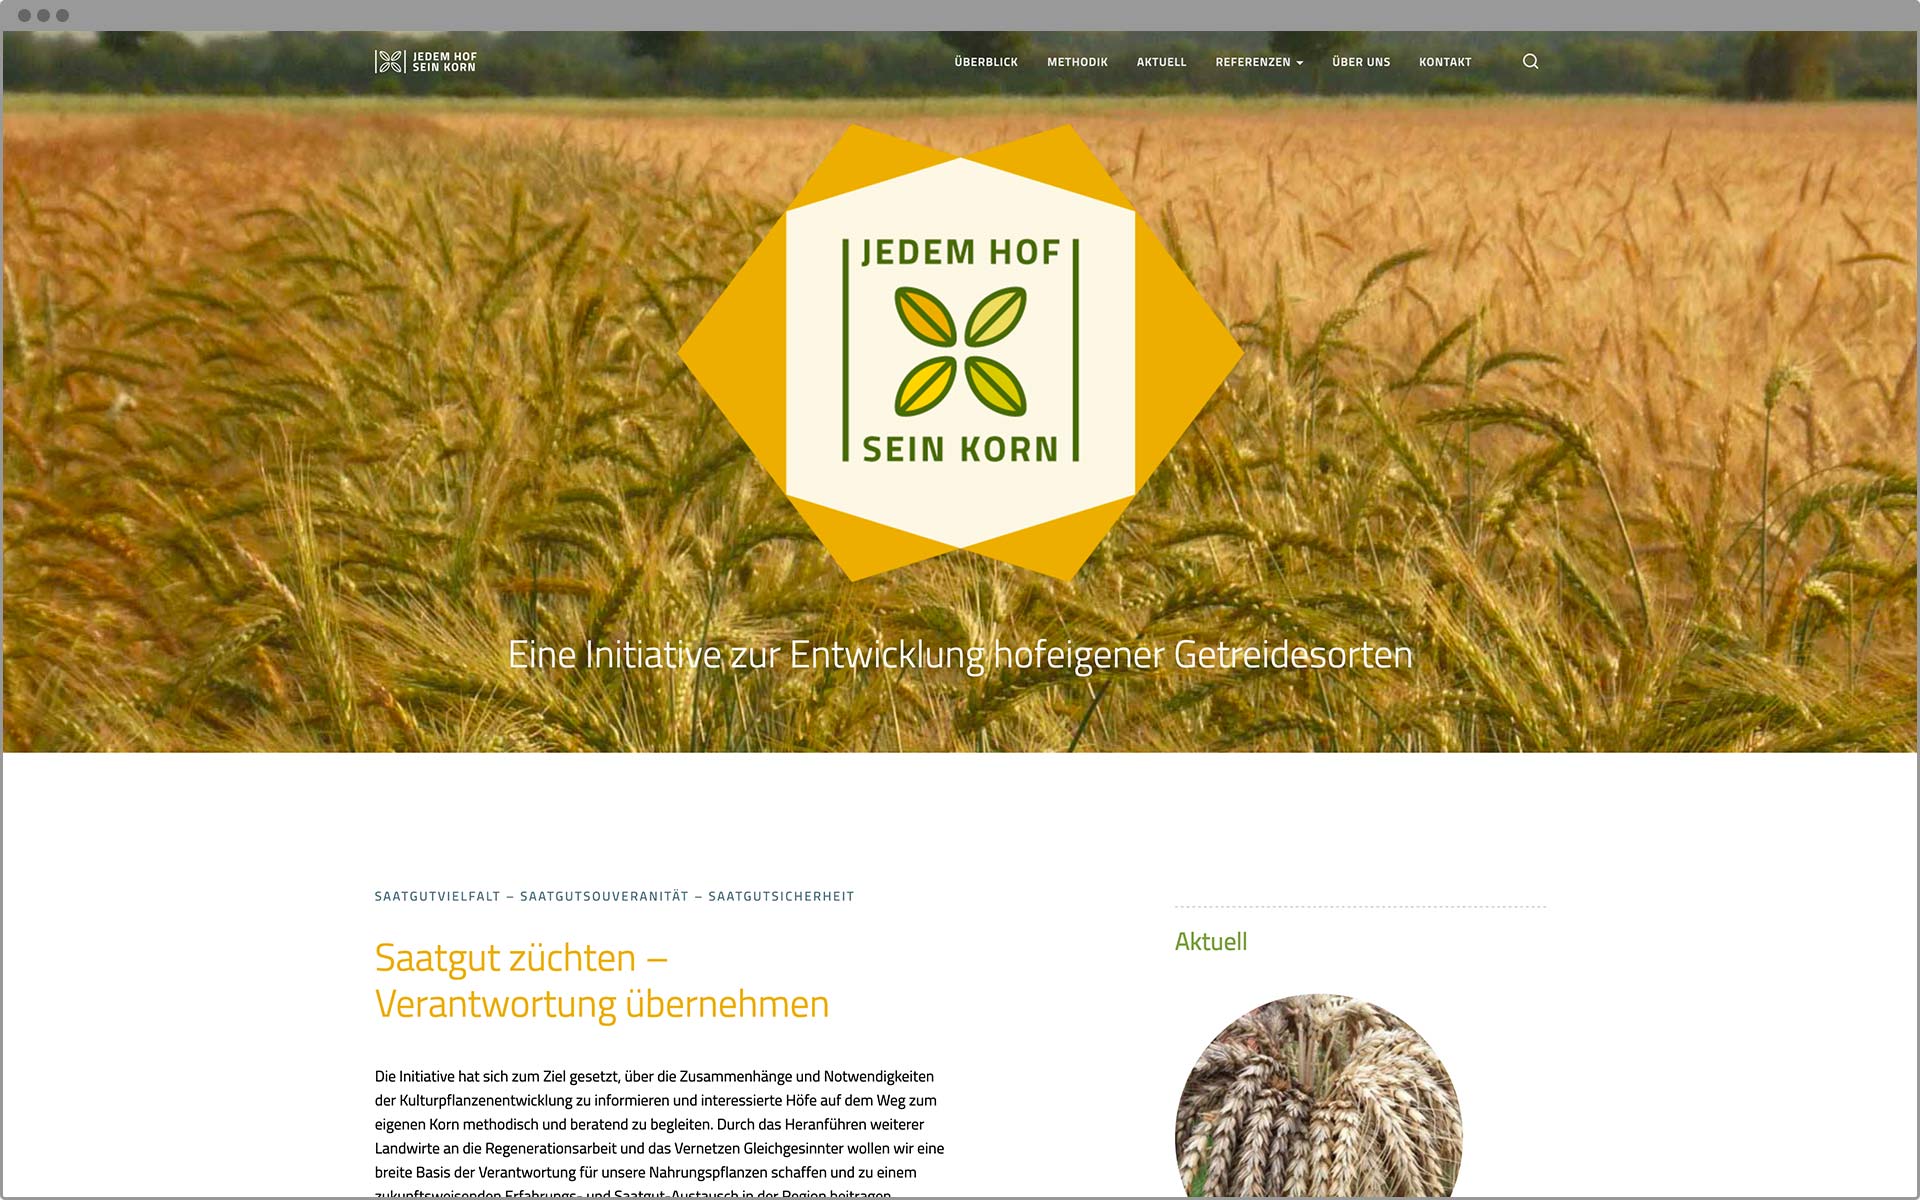 Webdesign Startseite mit Headerbild und Markenzeichen JHsK